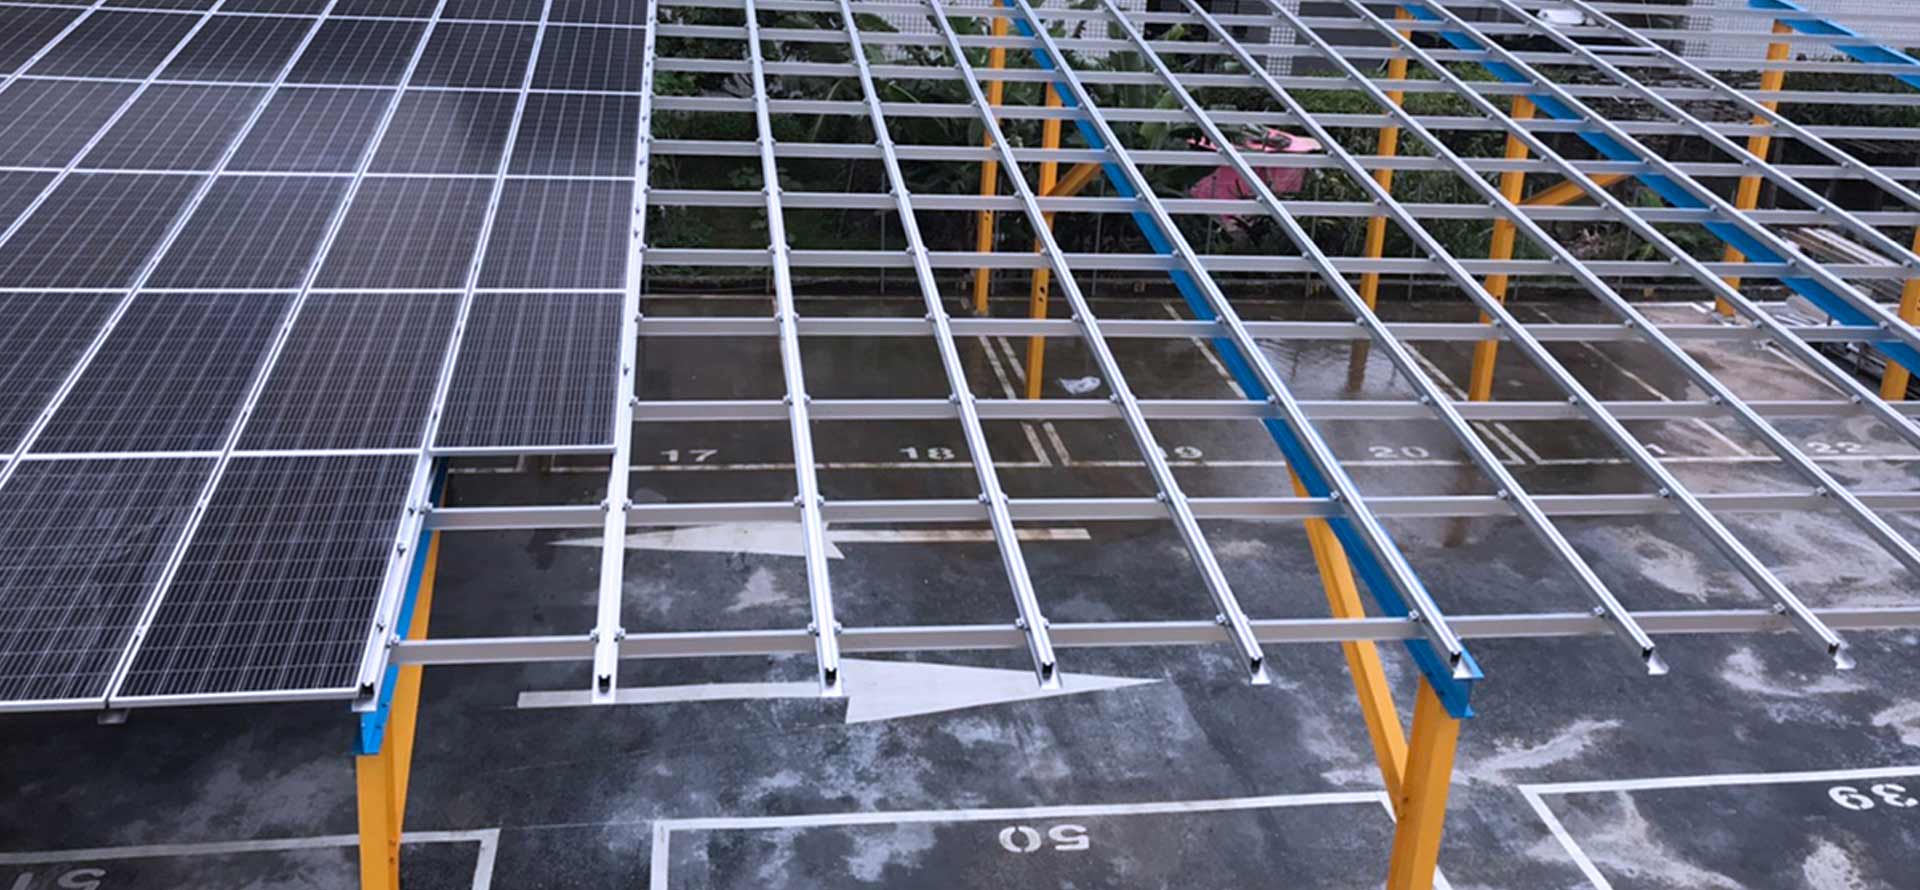 Solar Carport System supplier